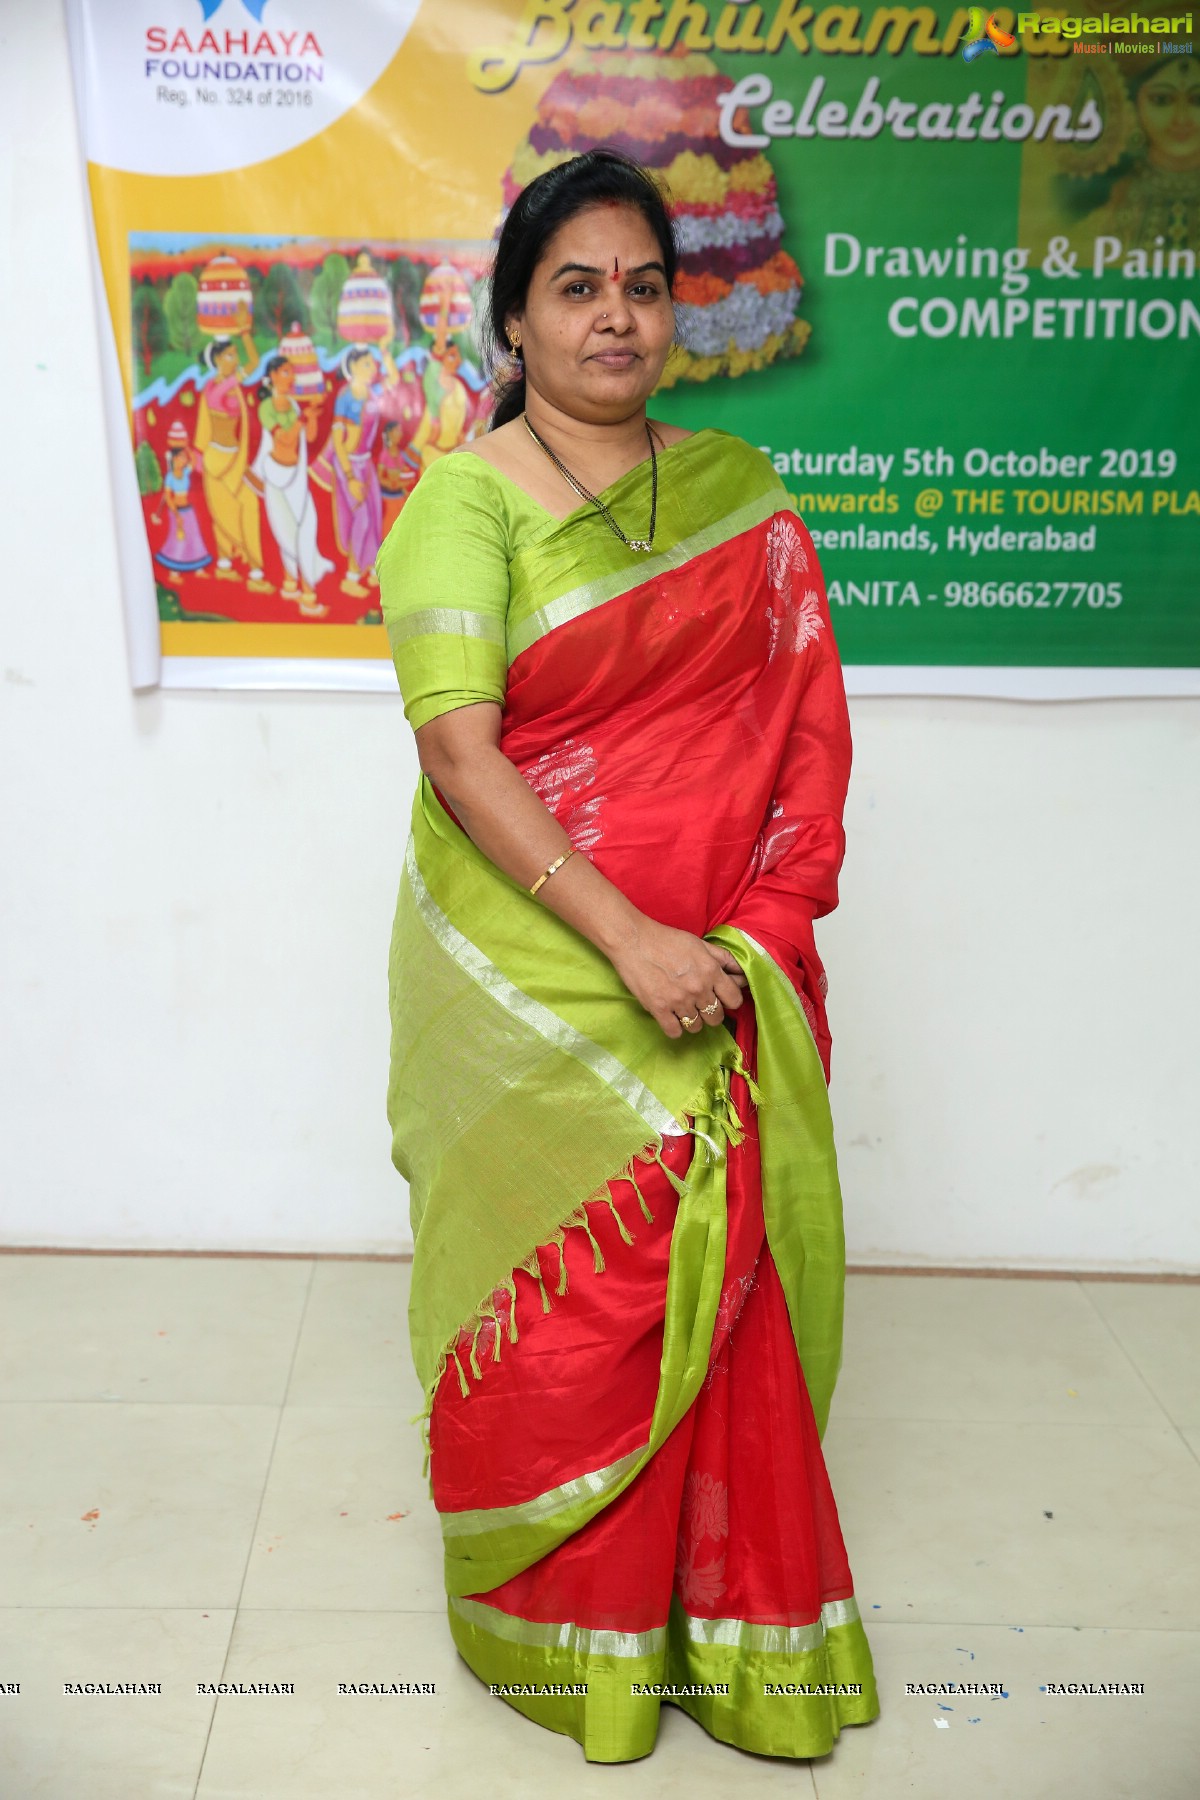 Telangana Bathukamma Celebrations - Drawing & Painting Competition